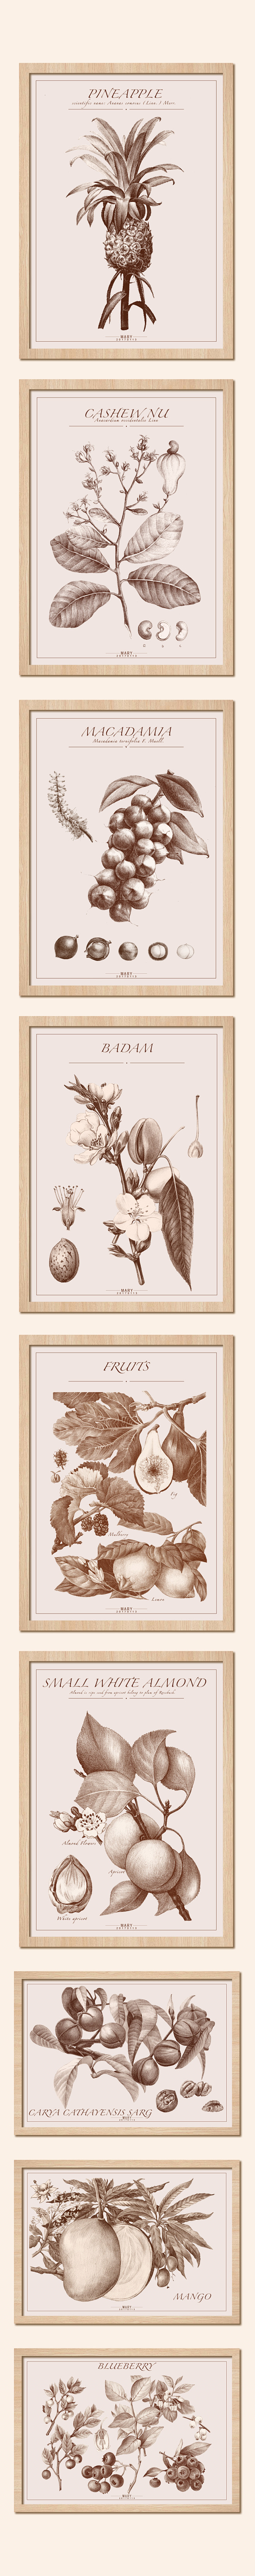 原创 坚果及水果素描装饰画作品